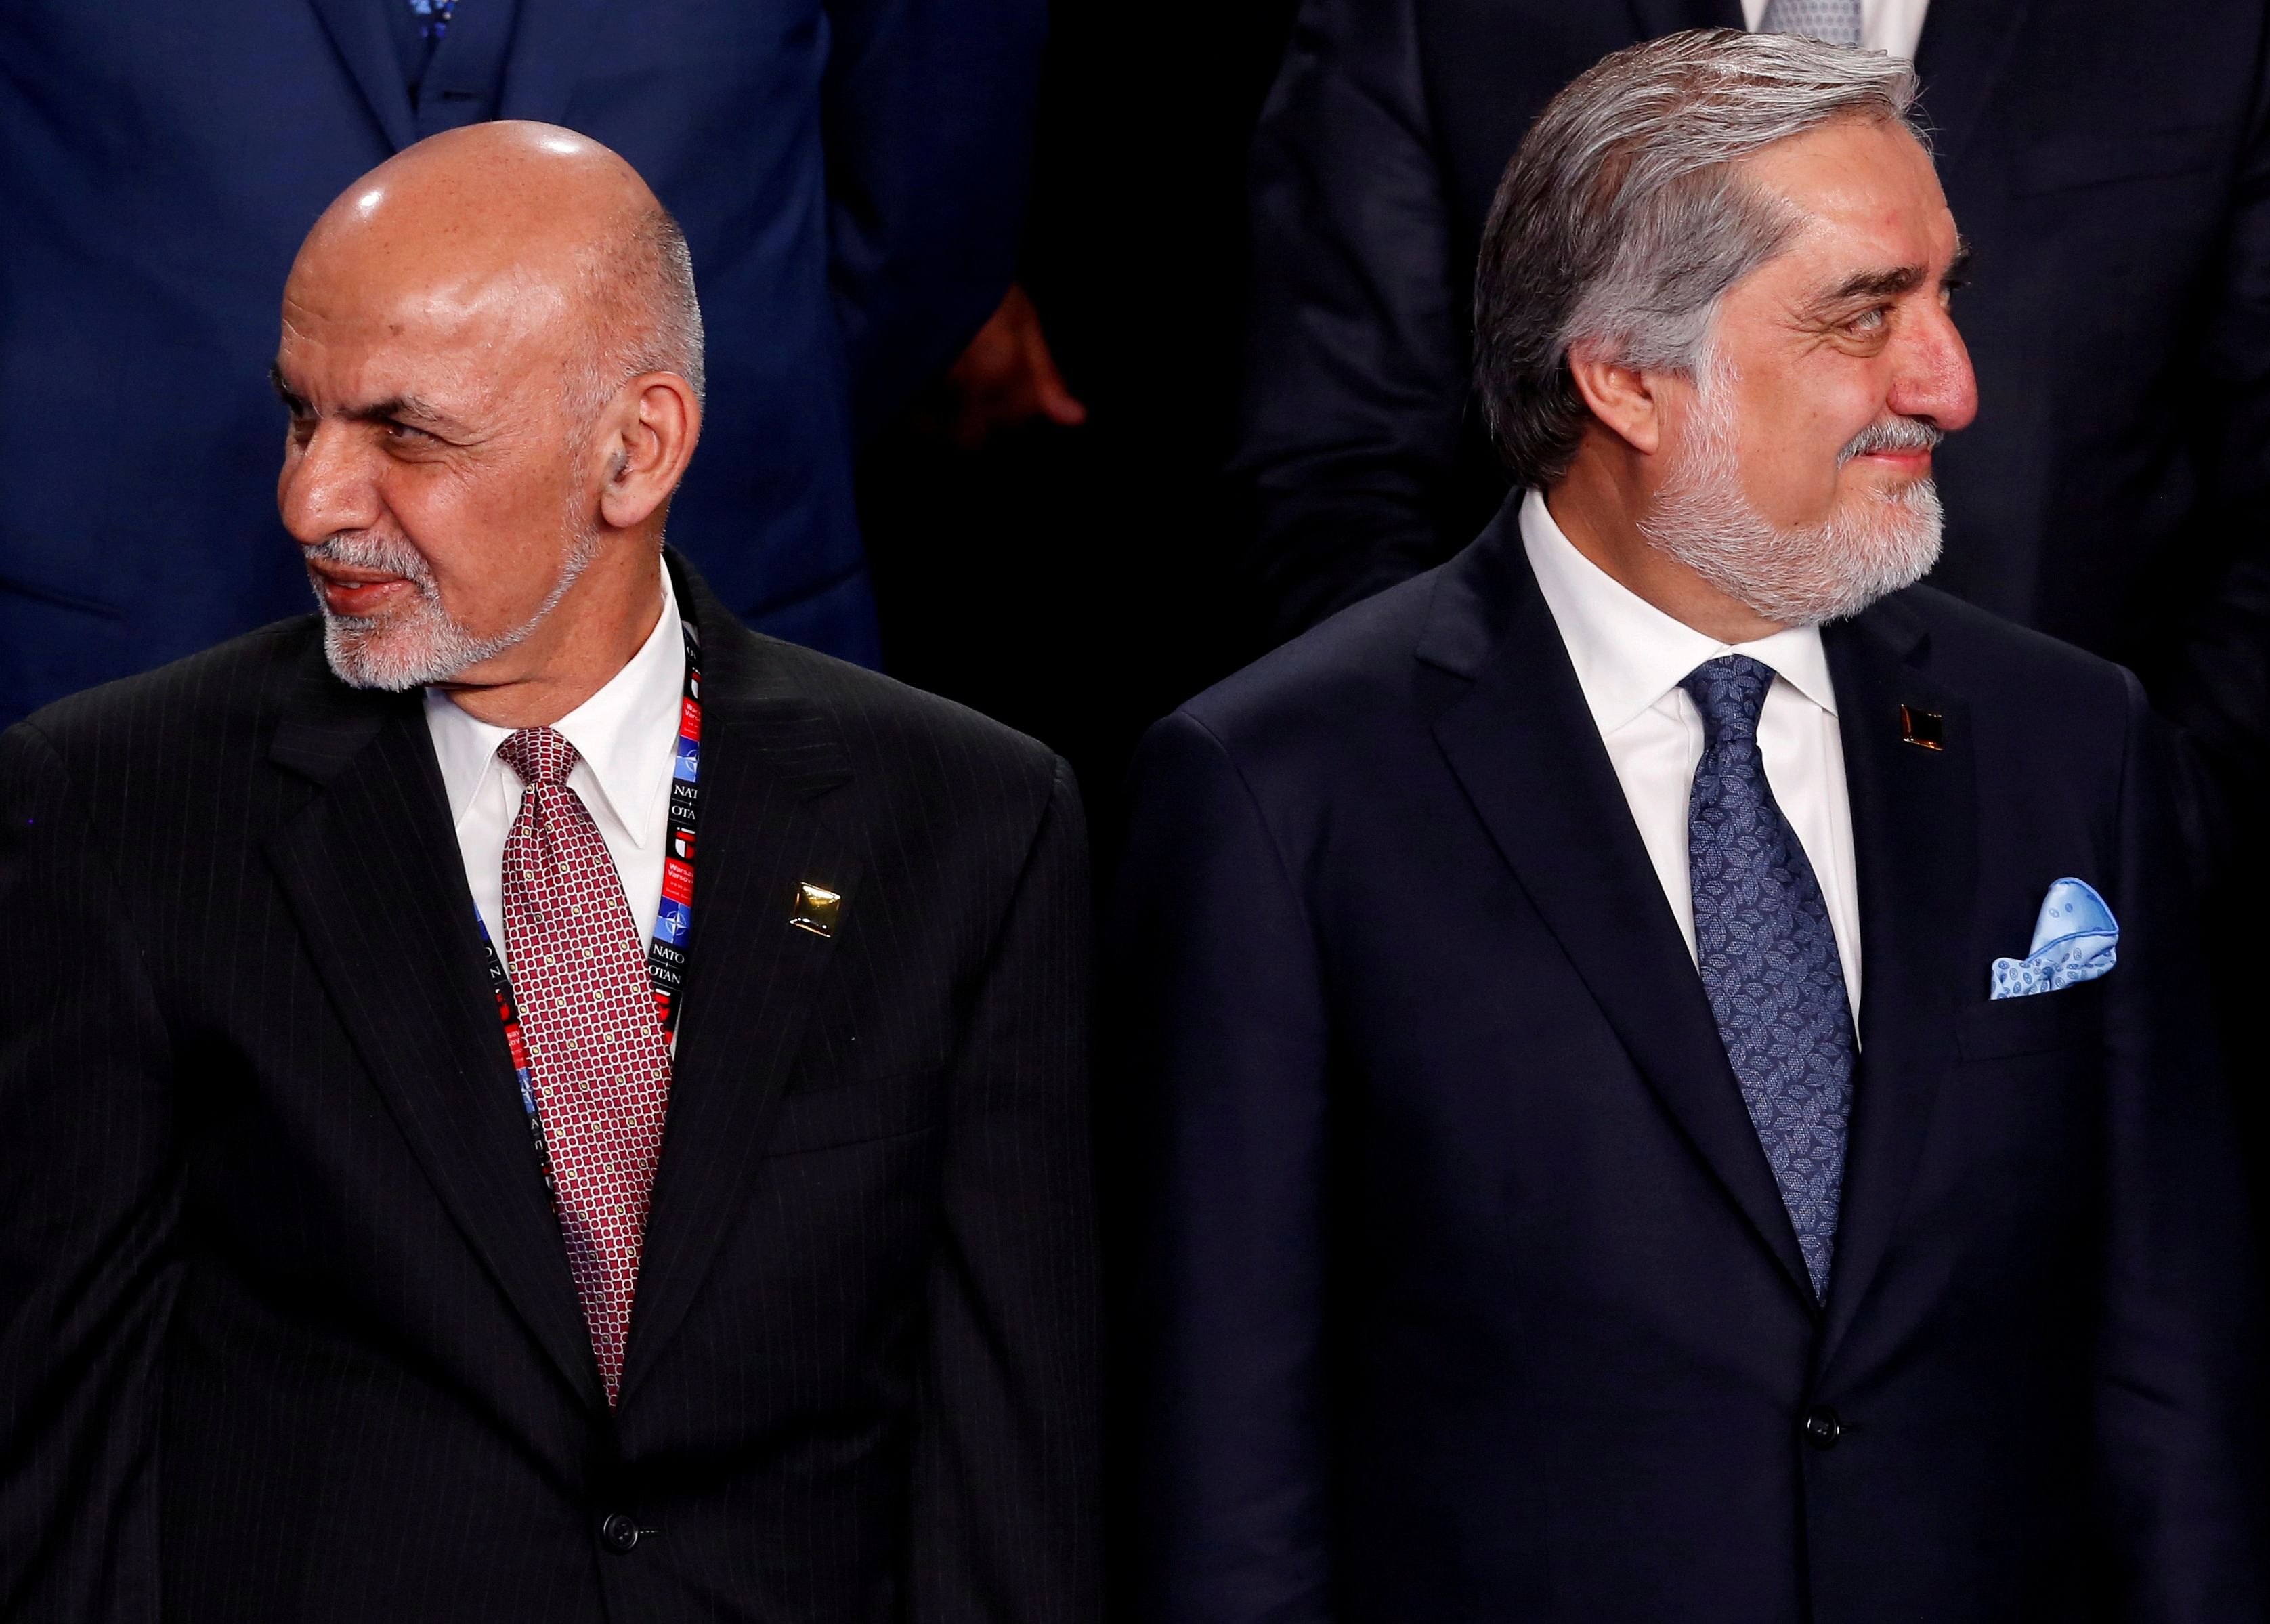 Afghan President Ashraf Ghani and his rival Abdullah Abdullah. Credit: Reuters File Photo